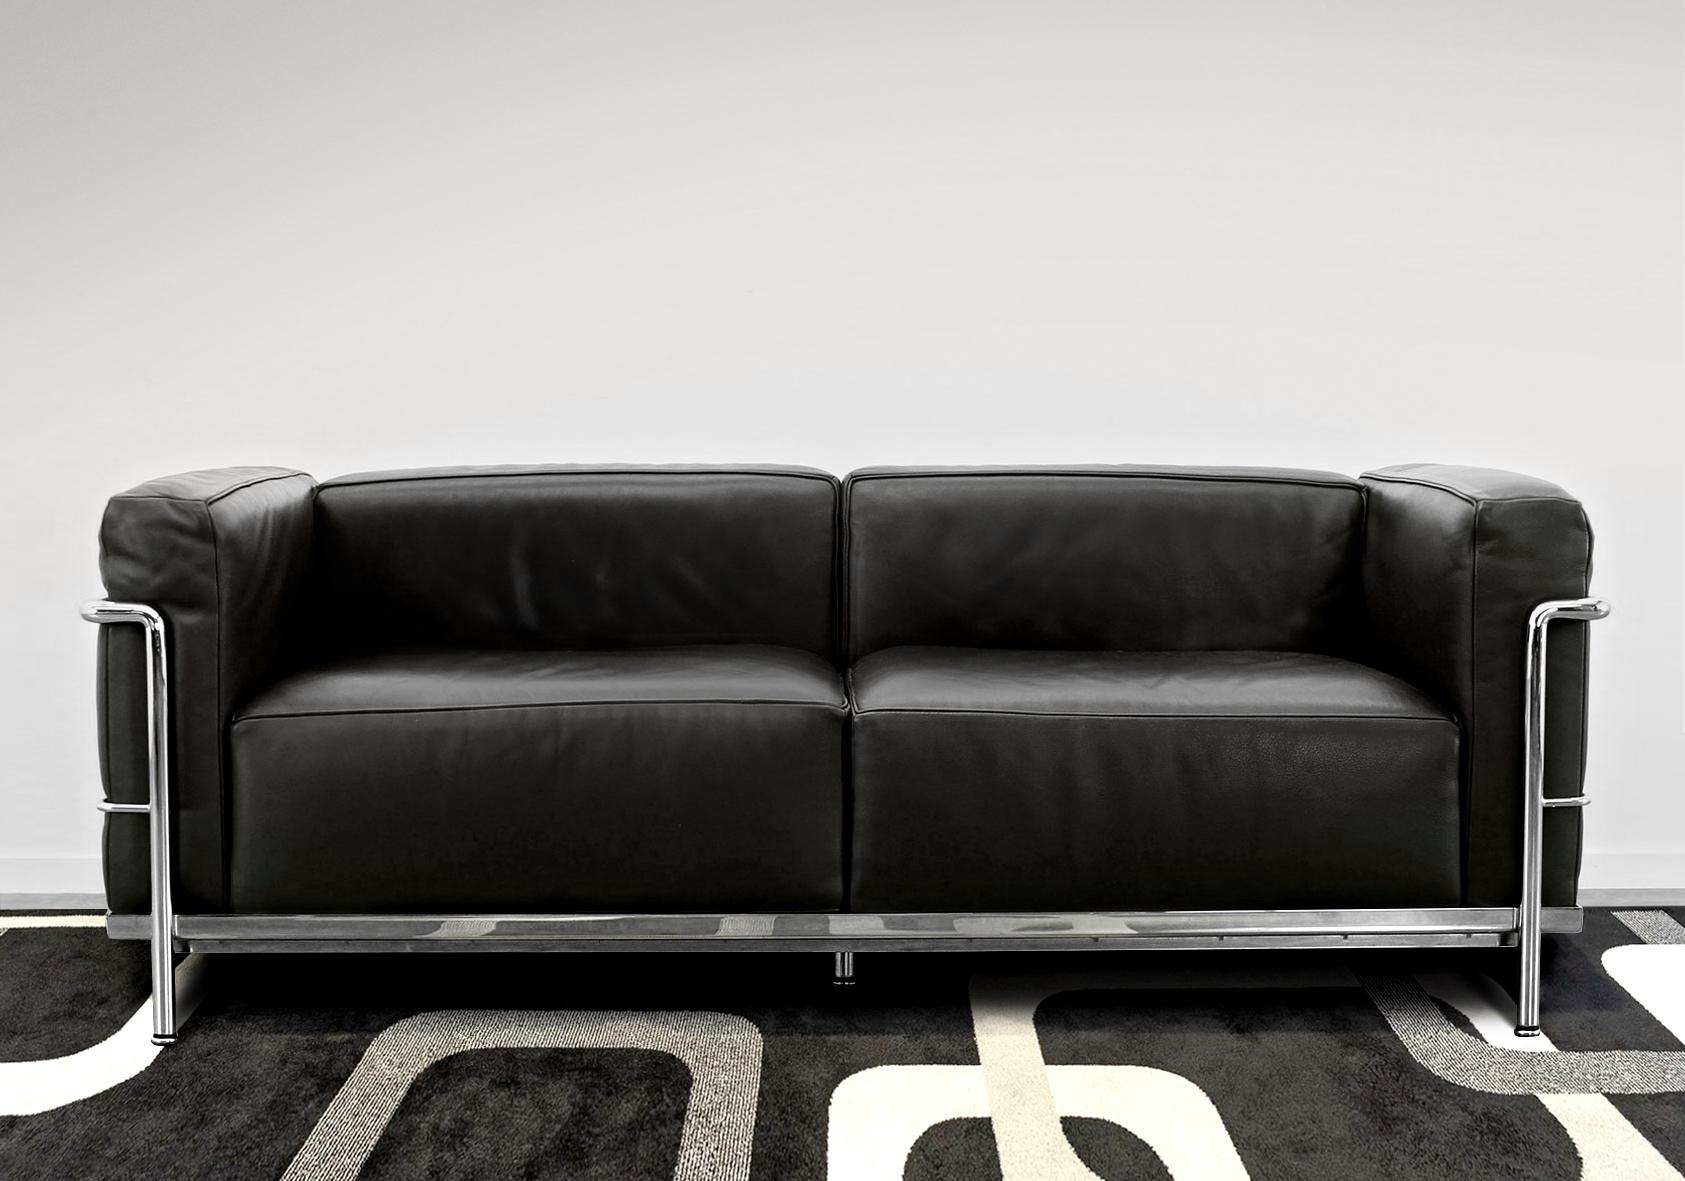 Authentisches Sofa LC3, entworfen von Le Corbusier, Perriand und Jeanneret im Jahr 1928.
Cassina Ausgabe in schwarzem Leder.
Eingravierte Seriennummer und Unterschrift von Cassina.

Sehr guter Zustand.

B 168 cm x T 73 cm x H 62 cm